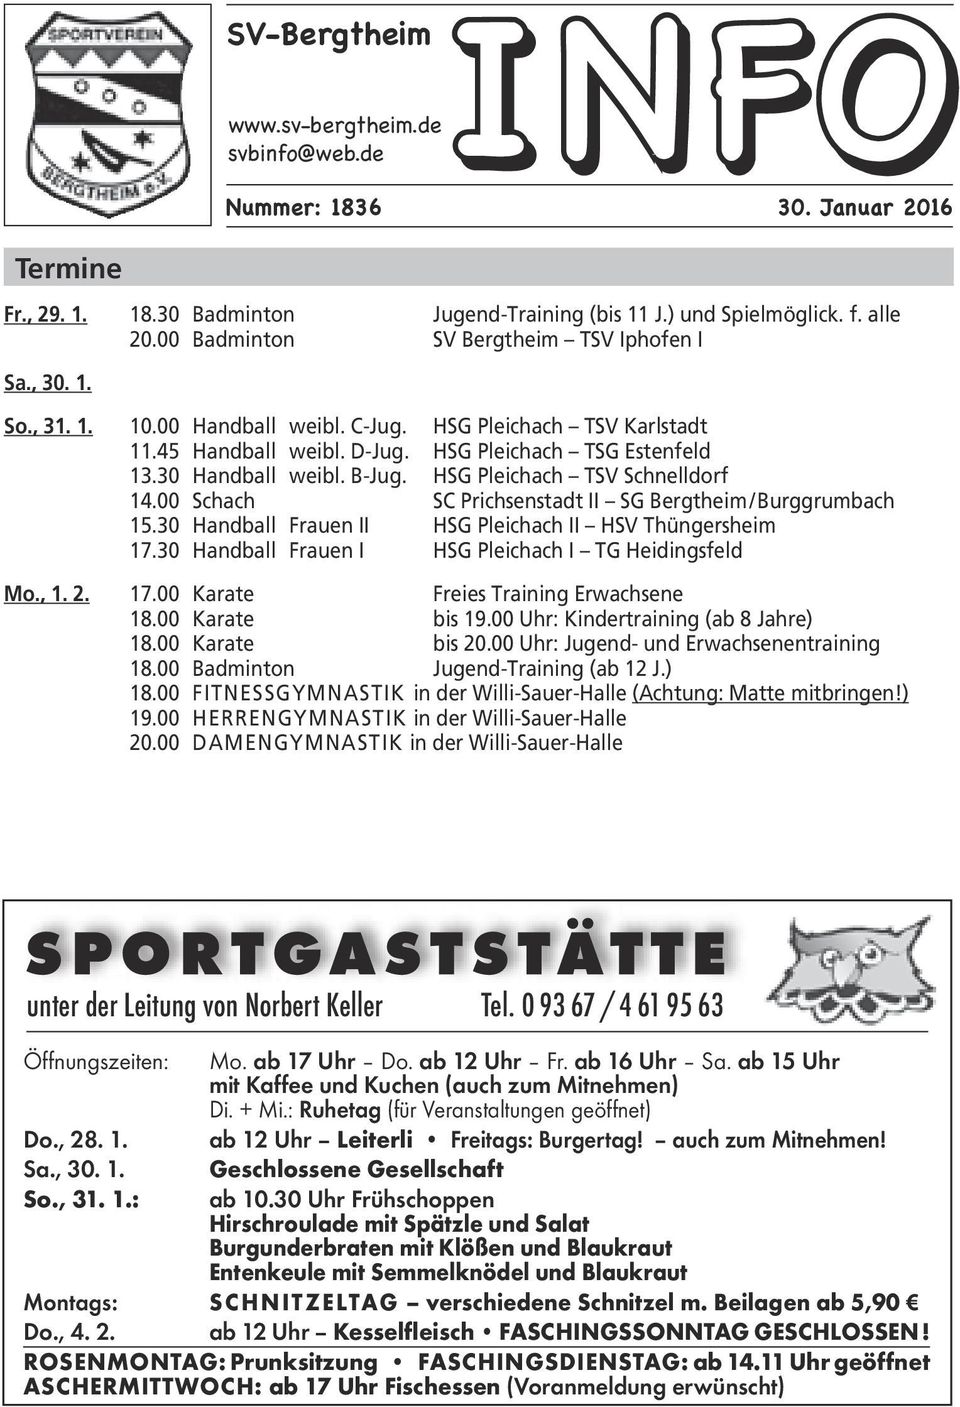 B-Jug. HSG Pleichach TSV Schnelldorf 14.00 Schach SC Prichsenstadt II SG Bergtheim / Burggrumbach 15.30 Handball Frauen II HSG Pleichach II HSV Thüngersheim 17.